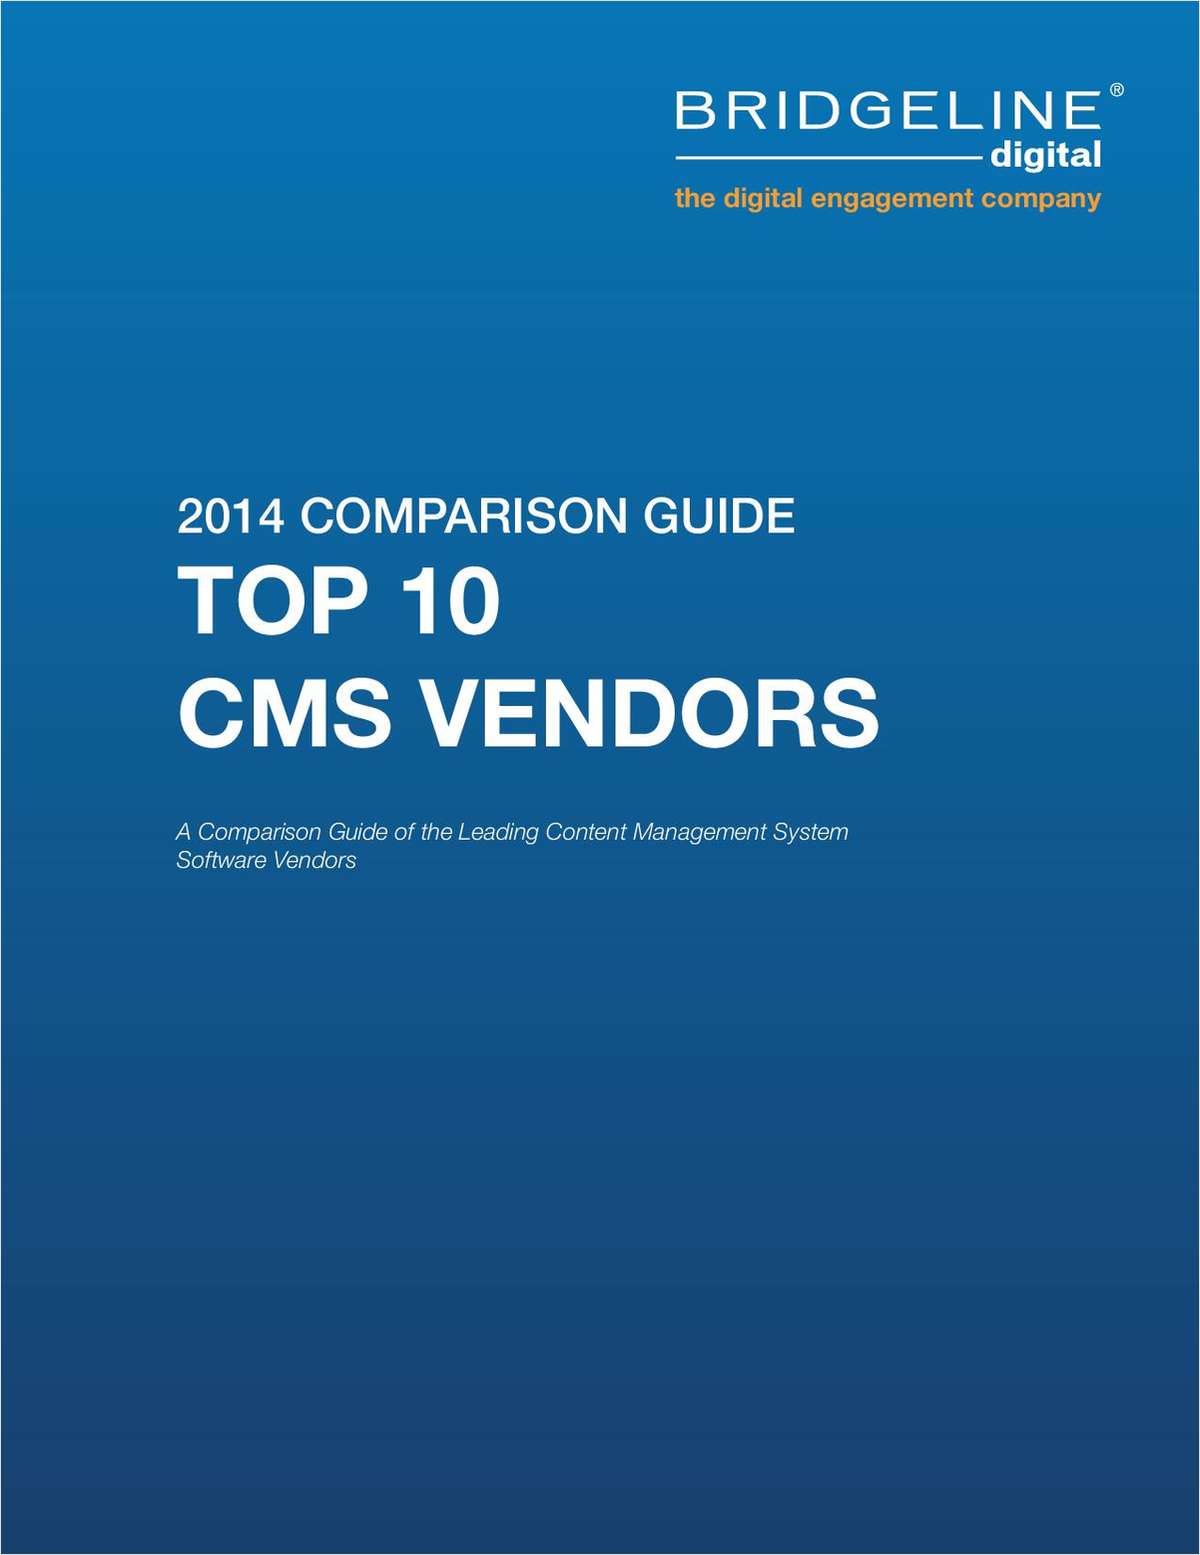 Top 10 Content Management System Comparison Guide